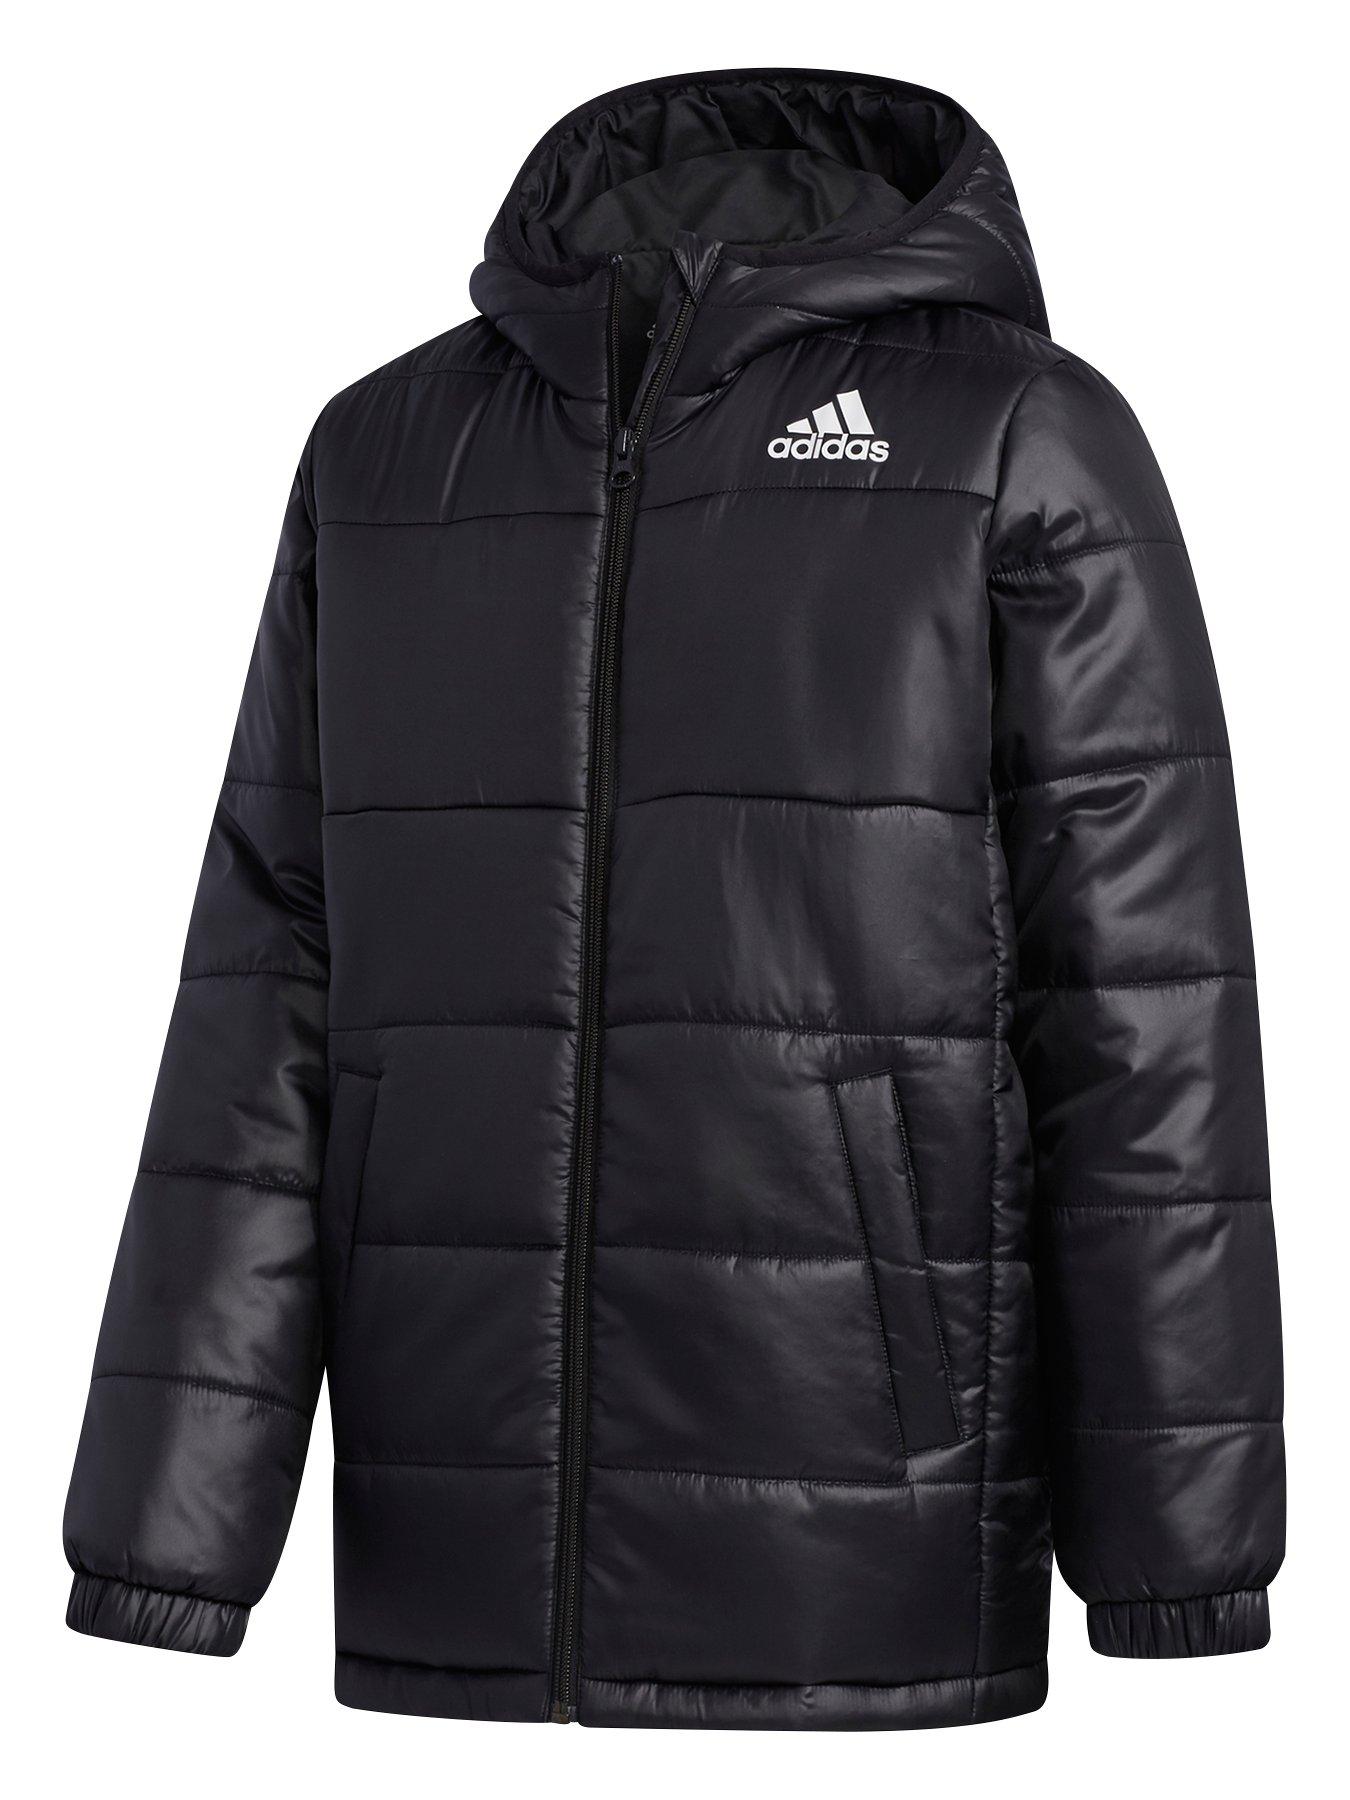 adidas Youth Synthetic Jacket - Black 